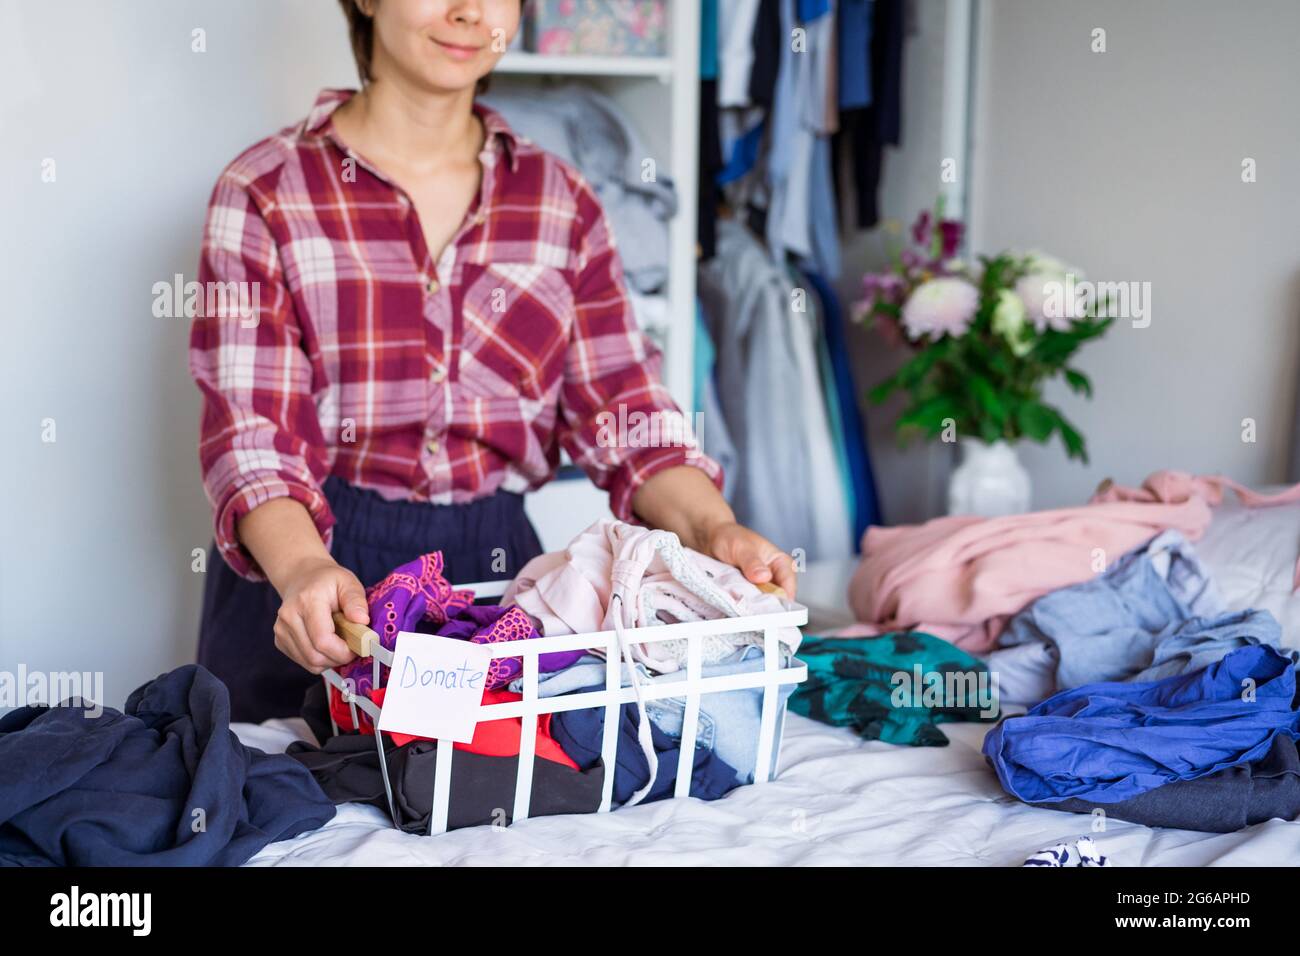 Une femme avec une sélection de vêtements de sa garde-robe pour faire un don dans une boutique de la Charité. Femme Decluttering vêtements, Tri, et nettoyage. Réutilisation, deuxième ha Banque D'Images